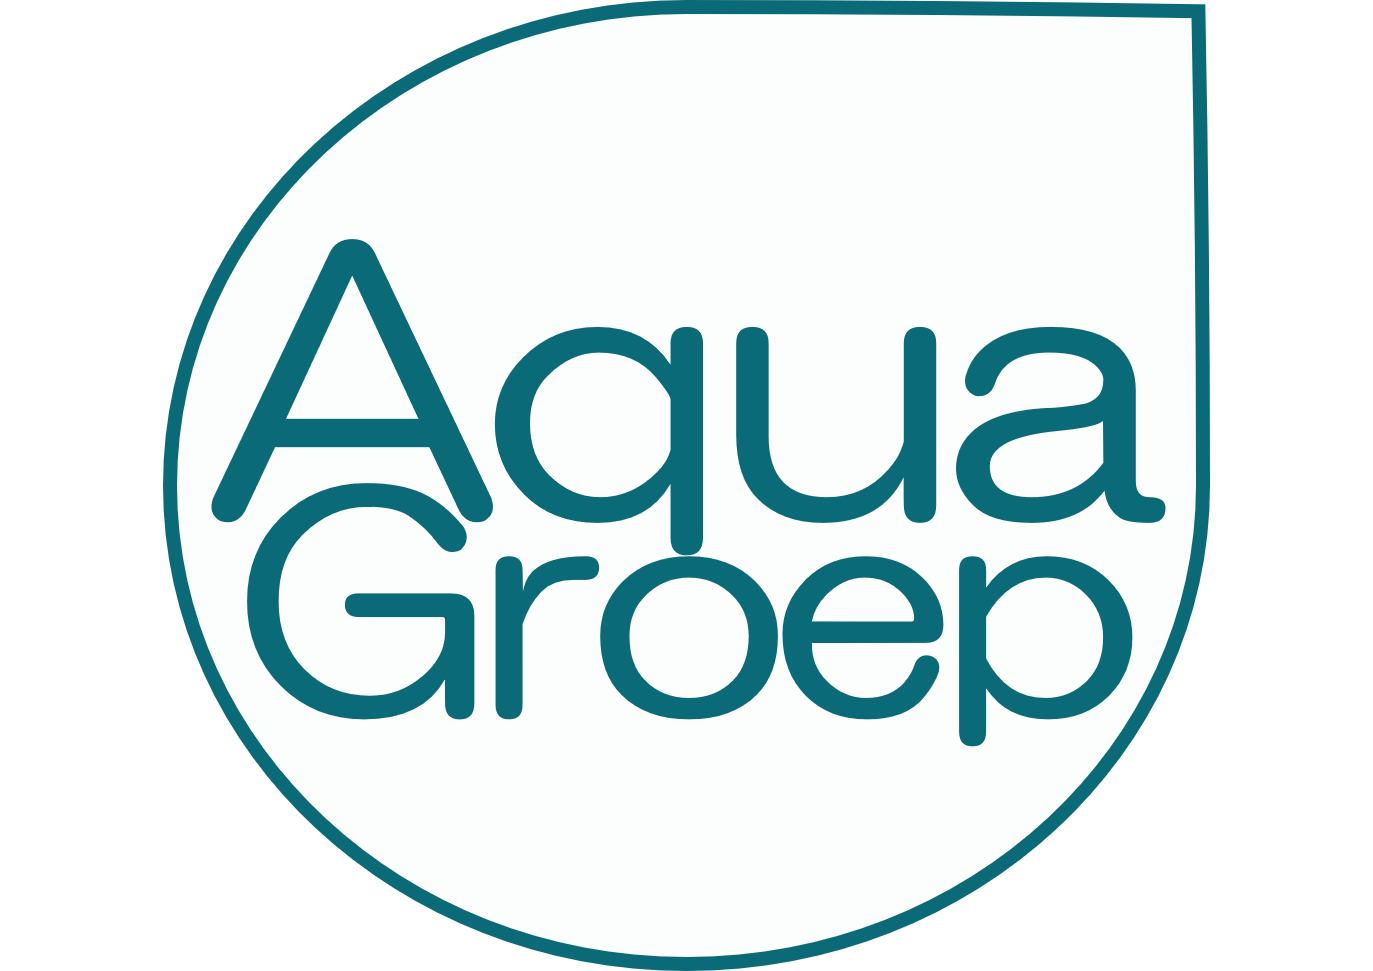 AquaGroep logo